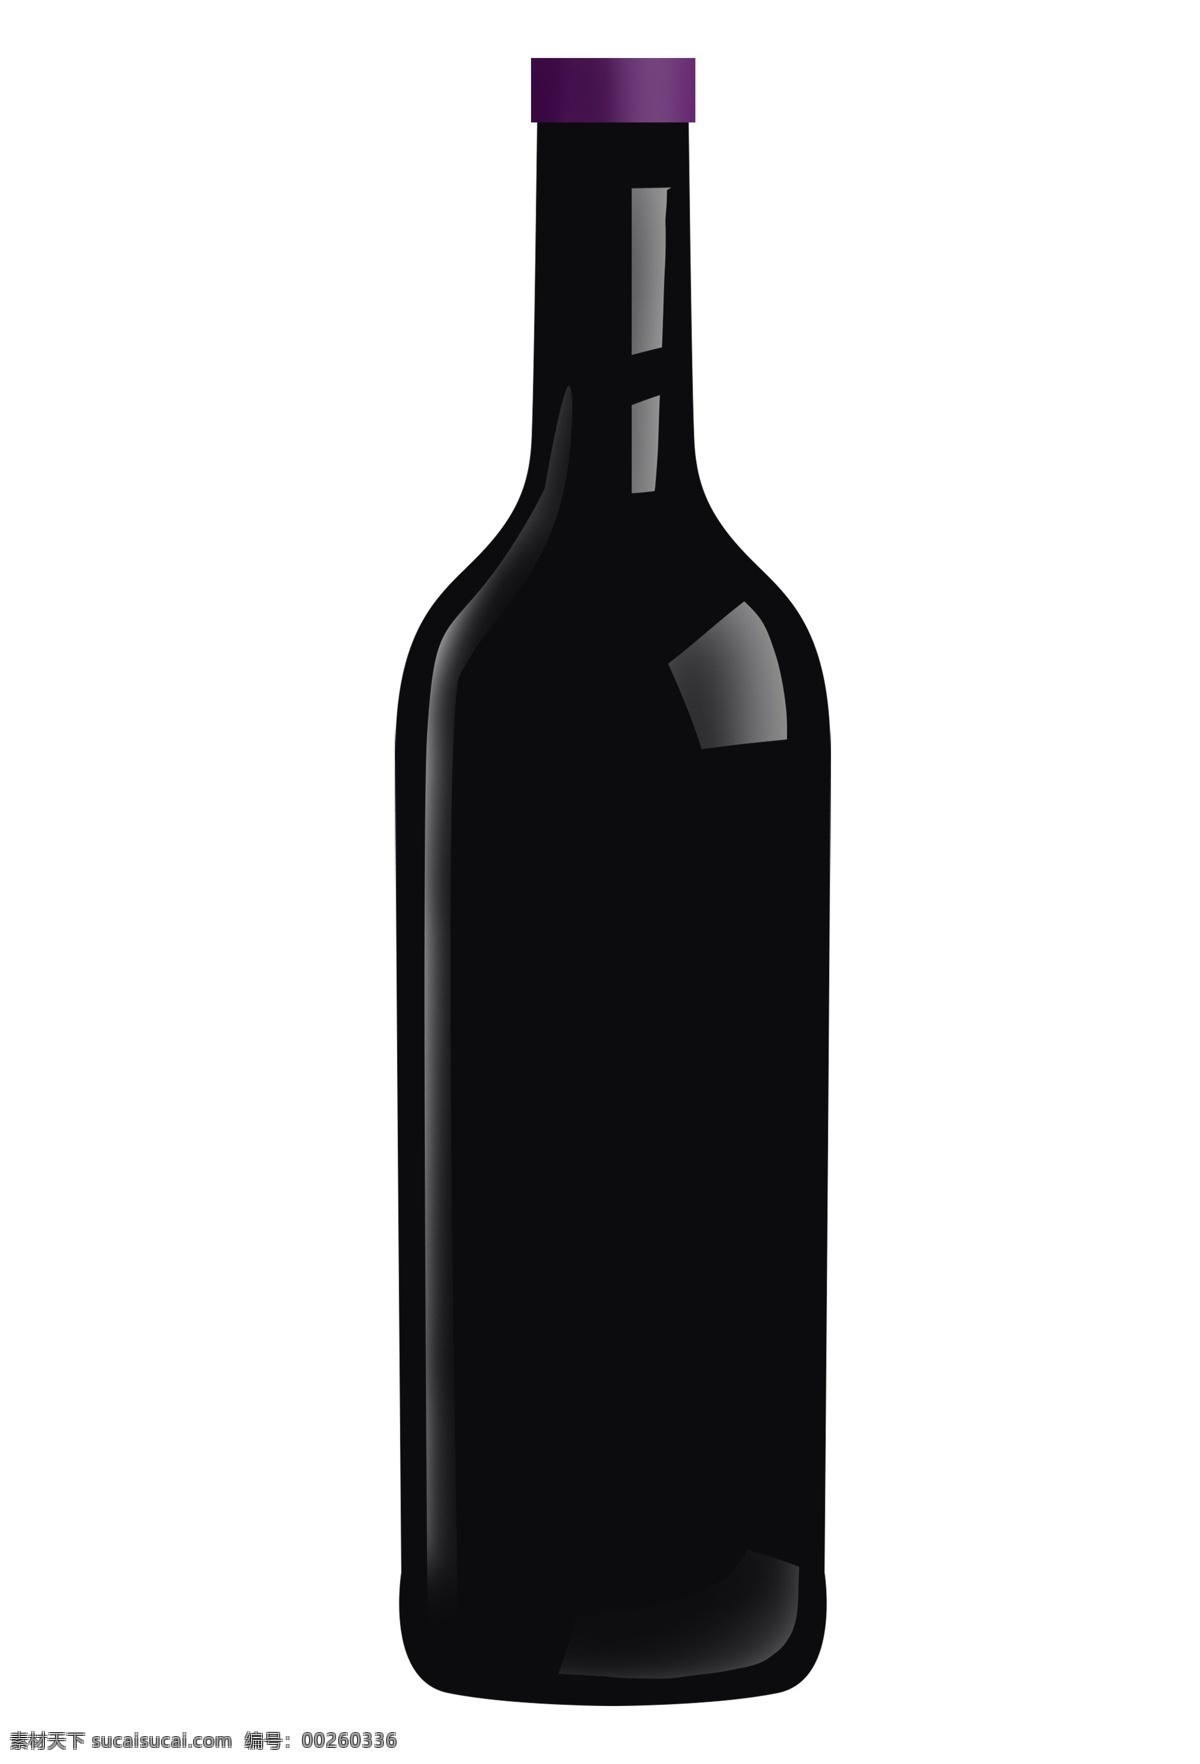 精致 黑色 红酒 酒瓶 黑色的酒瓶 卡通红酒插画 精美的红酒 精致的酒瓶 黑色酒瓶 紫色的瓶盖 红酒插画